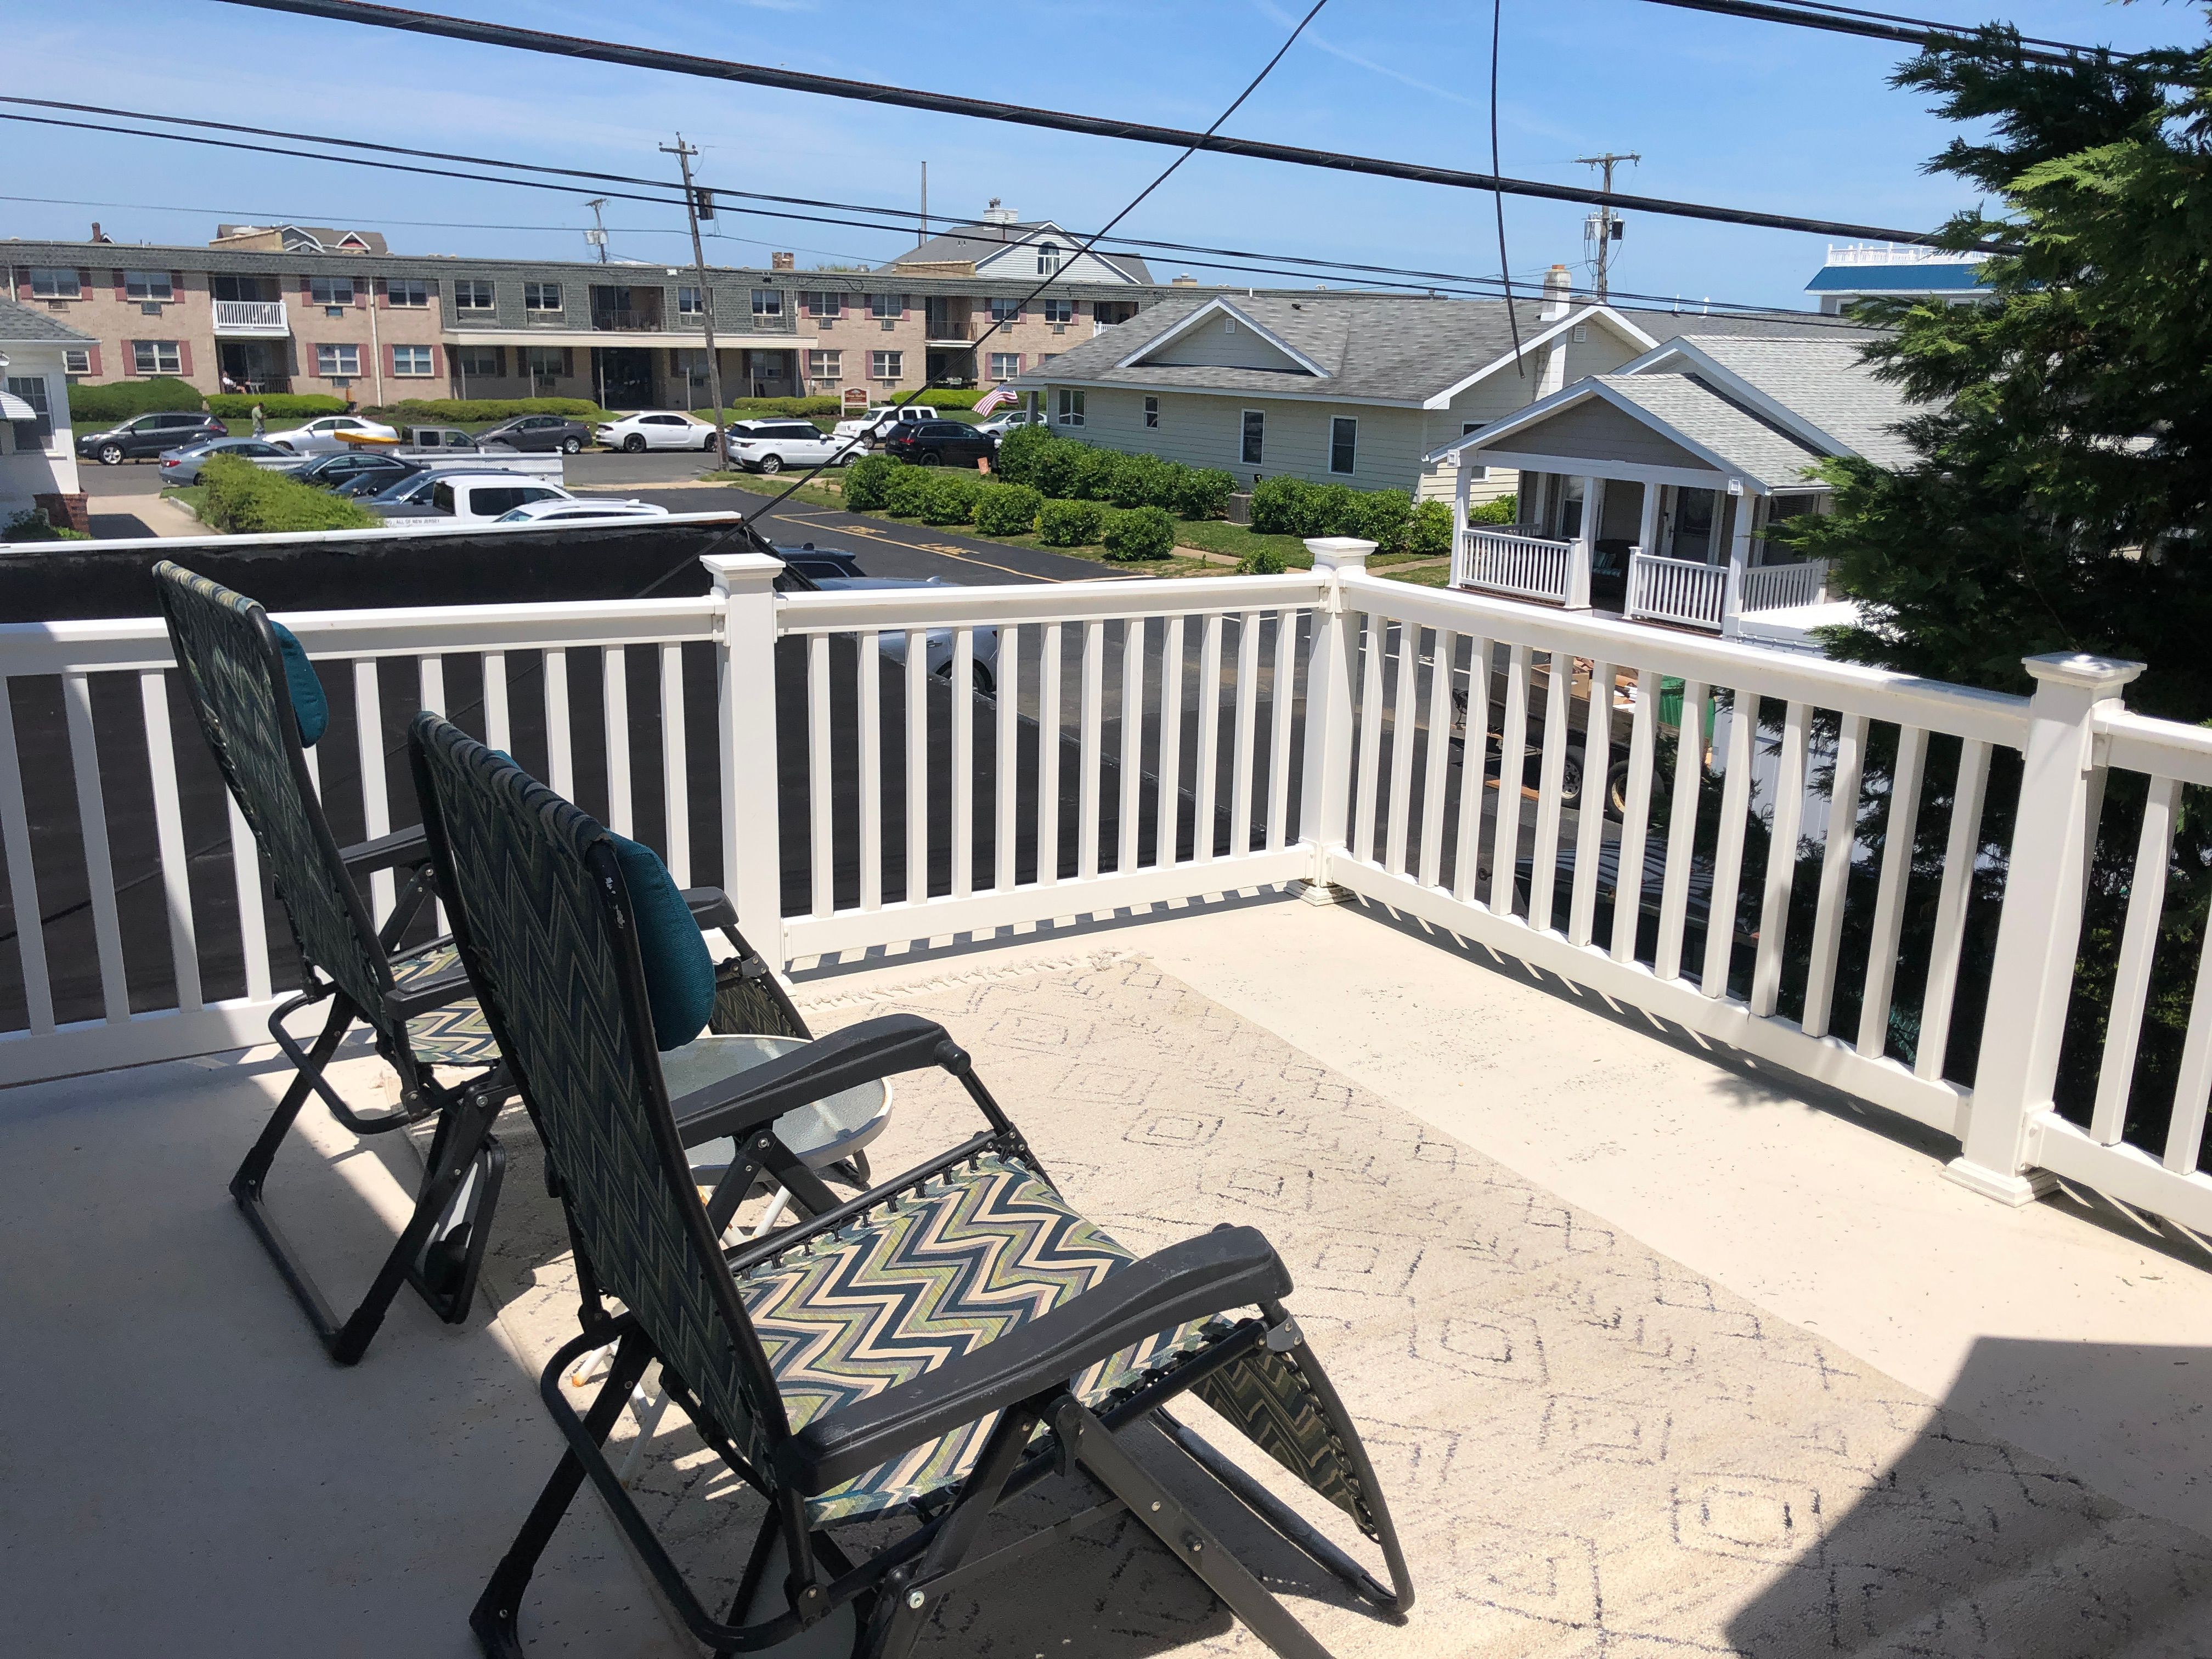 Summer rental 2 bedroom 2nd floor with deck and view of Ocean Belmar, NJ ShoreSummerRentals